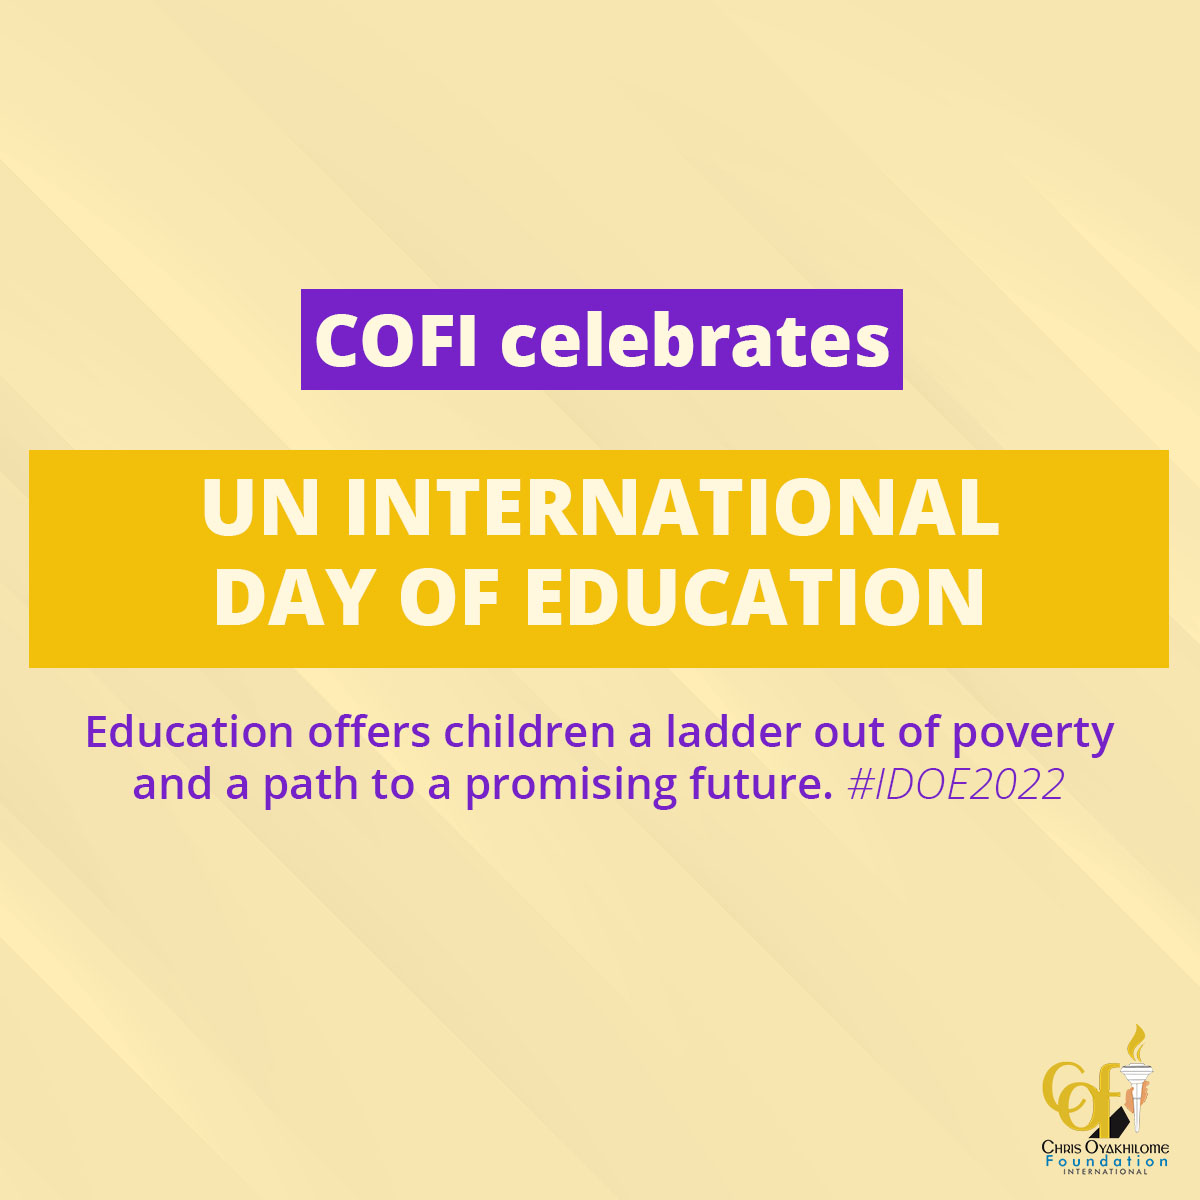 Education is Power: Chris Oyakhilome Foundation International Celebrates International Day of Education